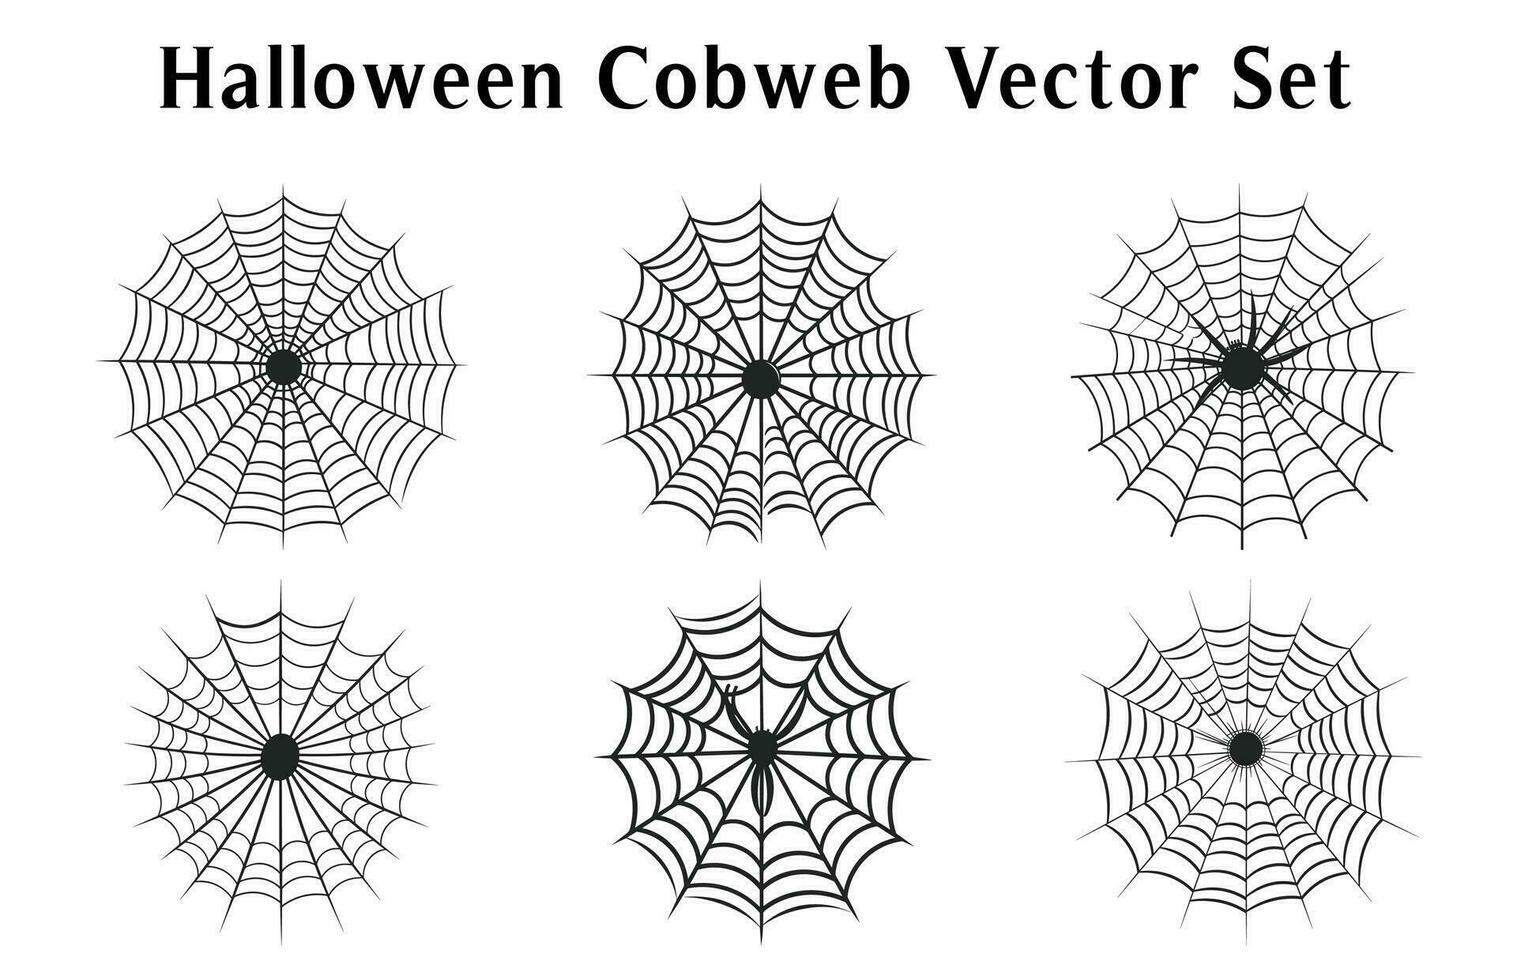 läskigt halloween spindelväv vektor bunt, Spindel webb uppsättning isolerat på en vit bakgrund